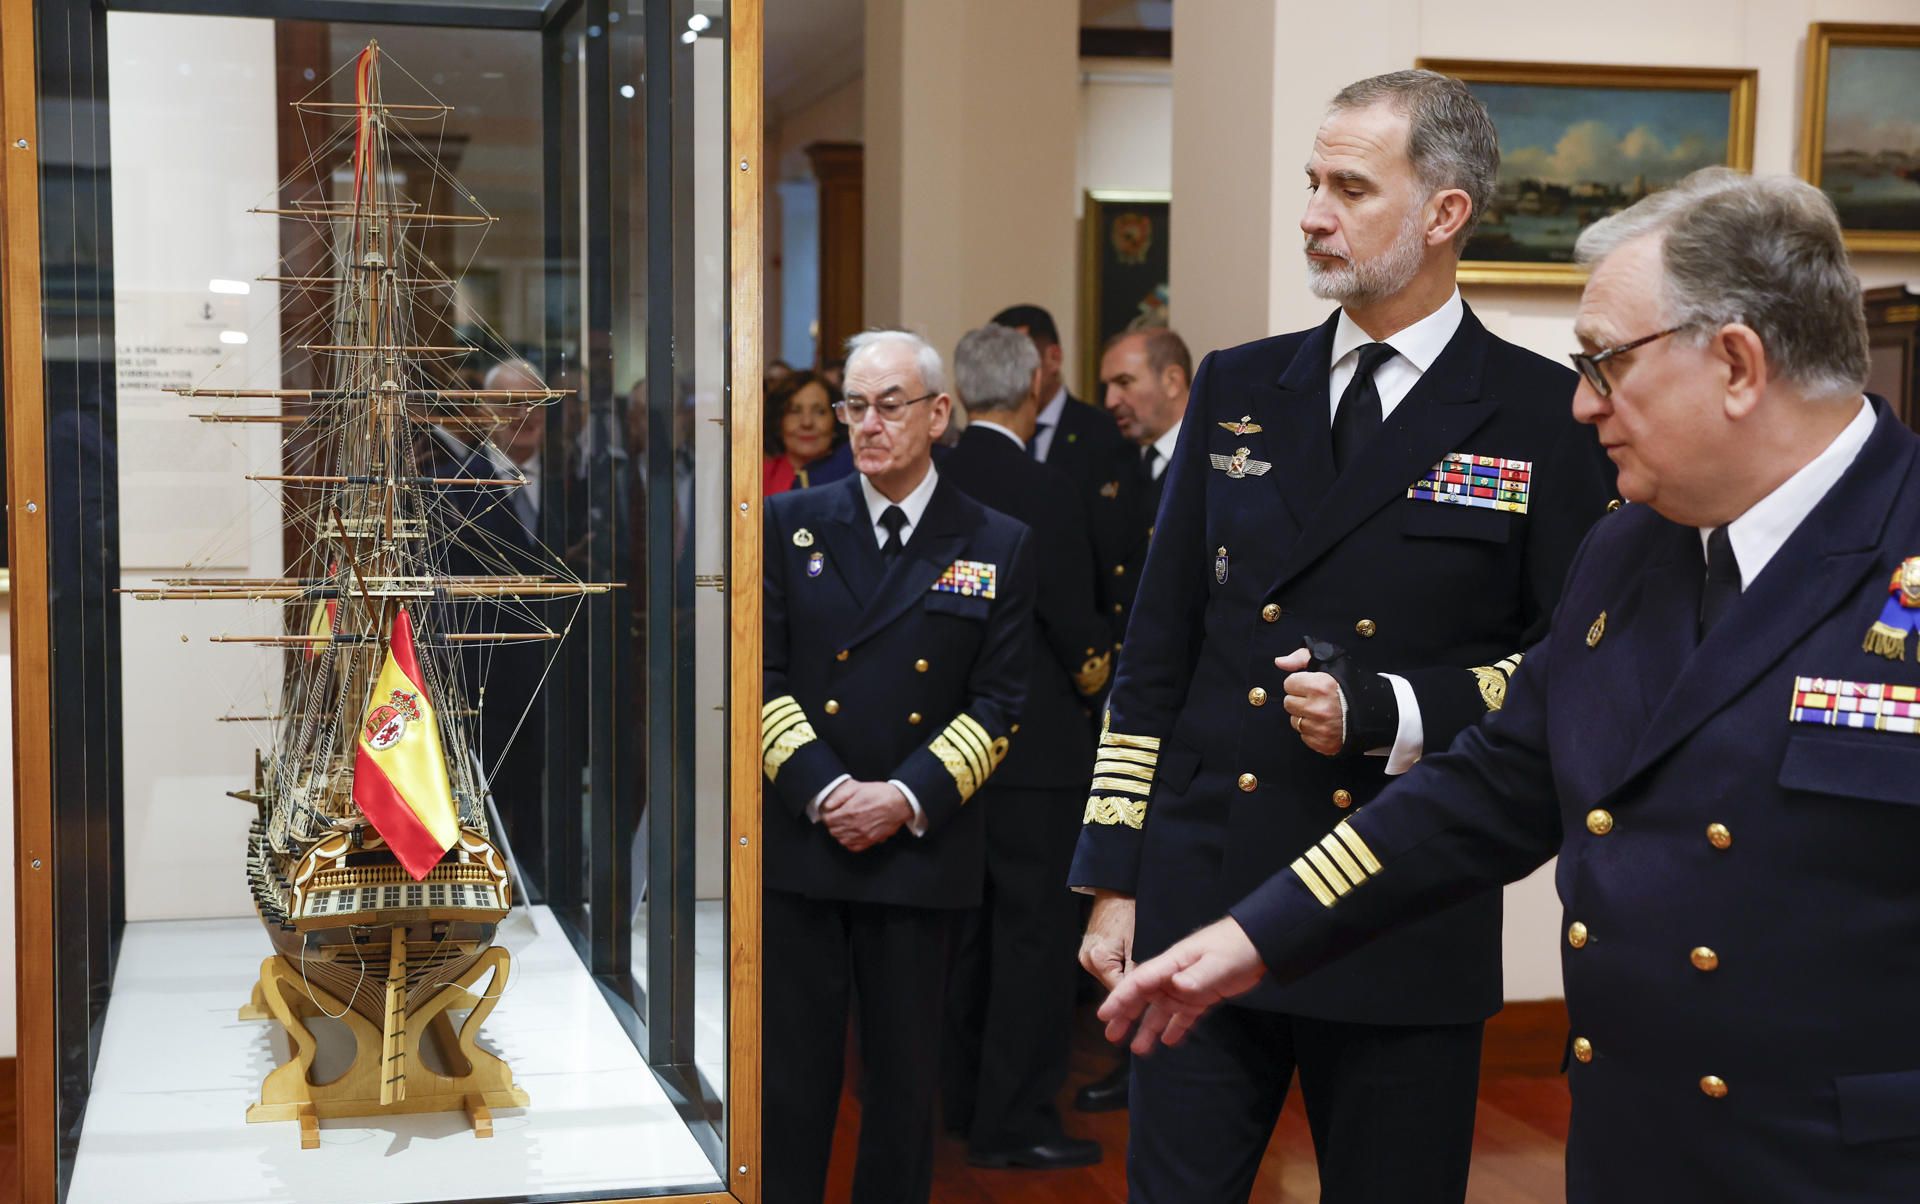 El rey Felipe VI (2i) observa una de las maquetas expuestas, acompañado por el jefe del Estado Mayor de la Defensa, el almirante general Teodoro López Calderon (c, al fondo), mientras asiste a la inauguración de la exposición "Jorge Juan, el legado de un marino científico" este viernes en el Museo Naval de Madrid.